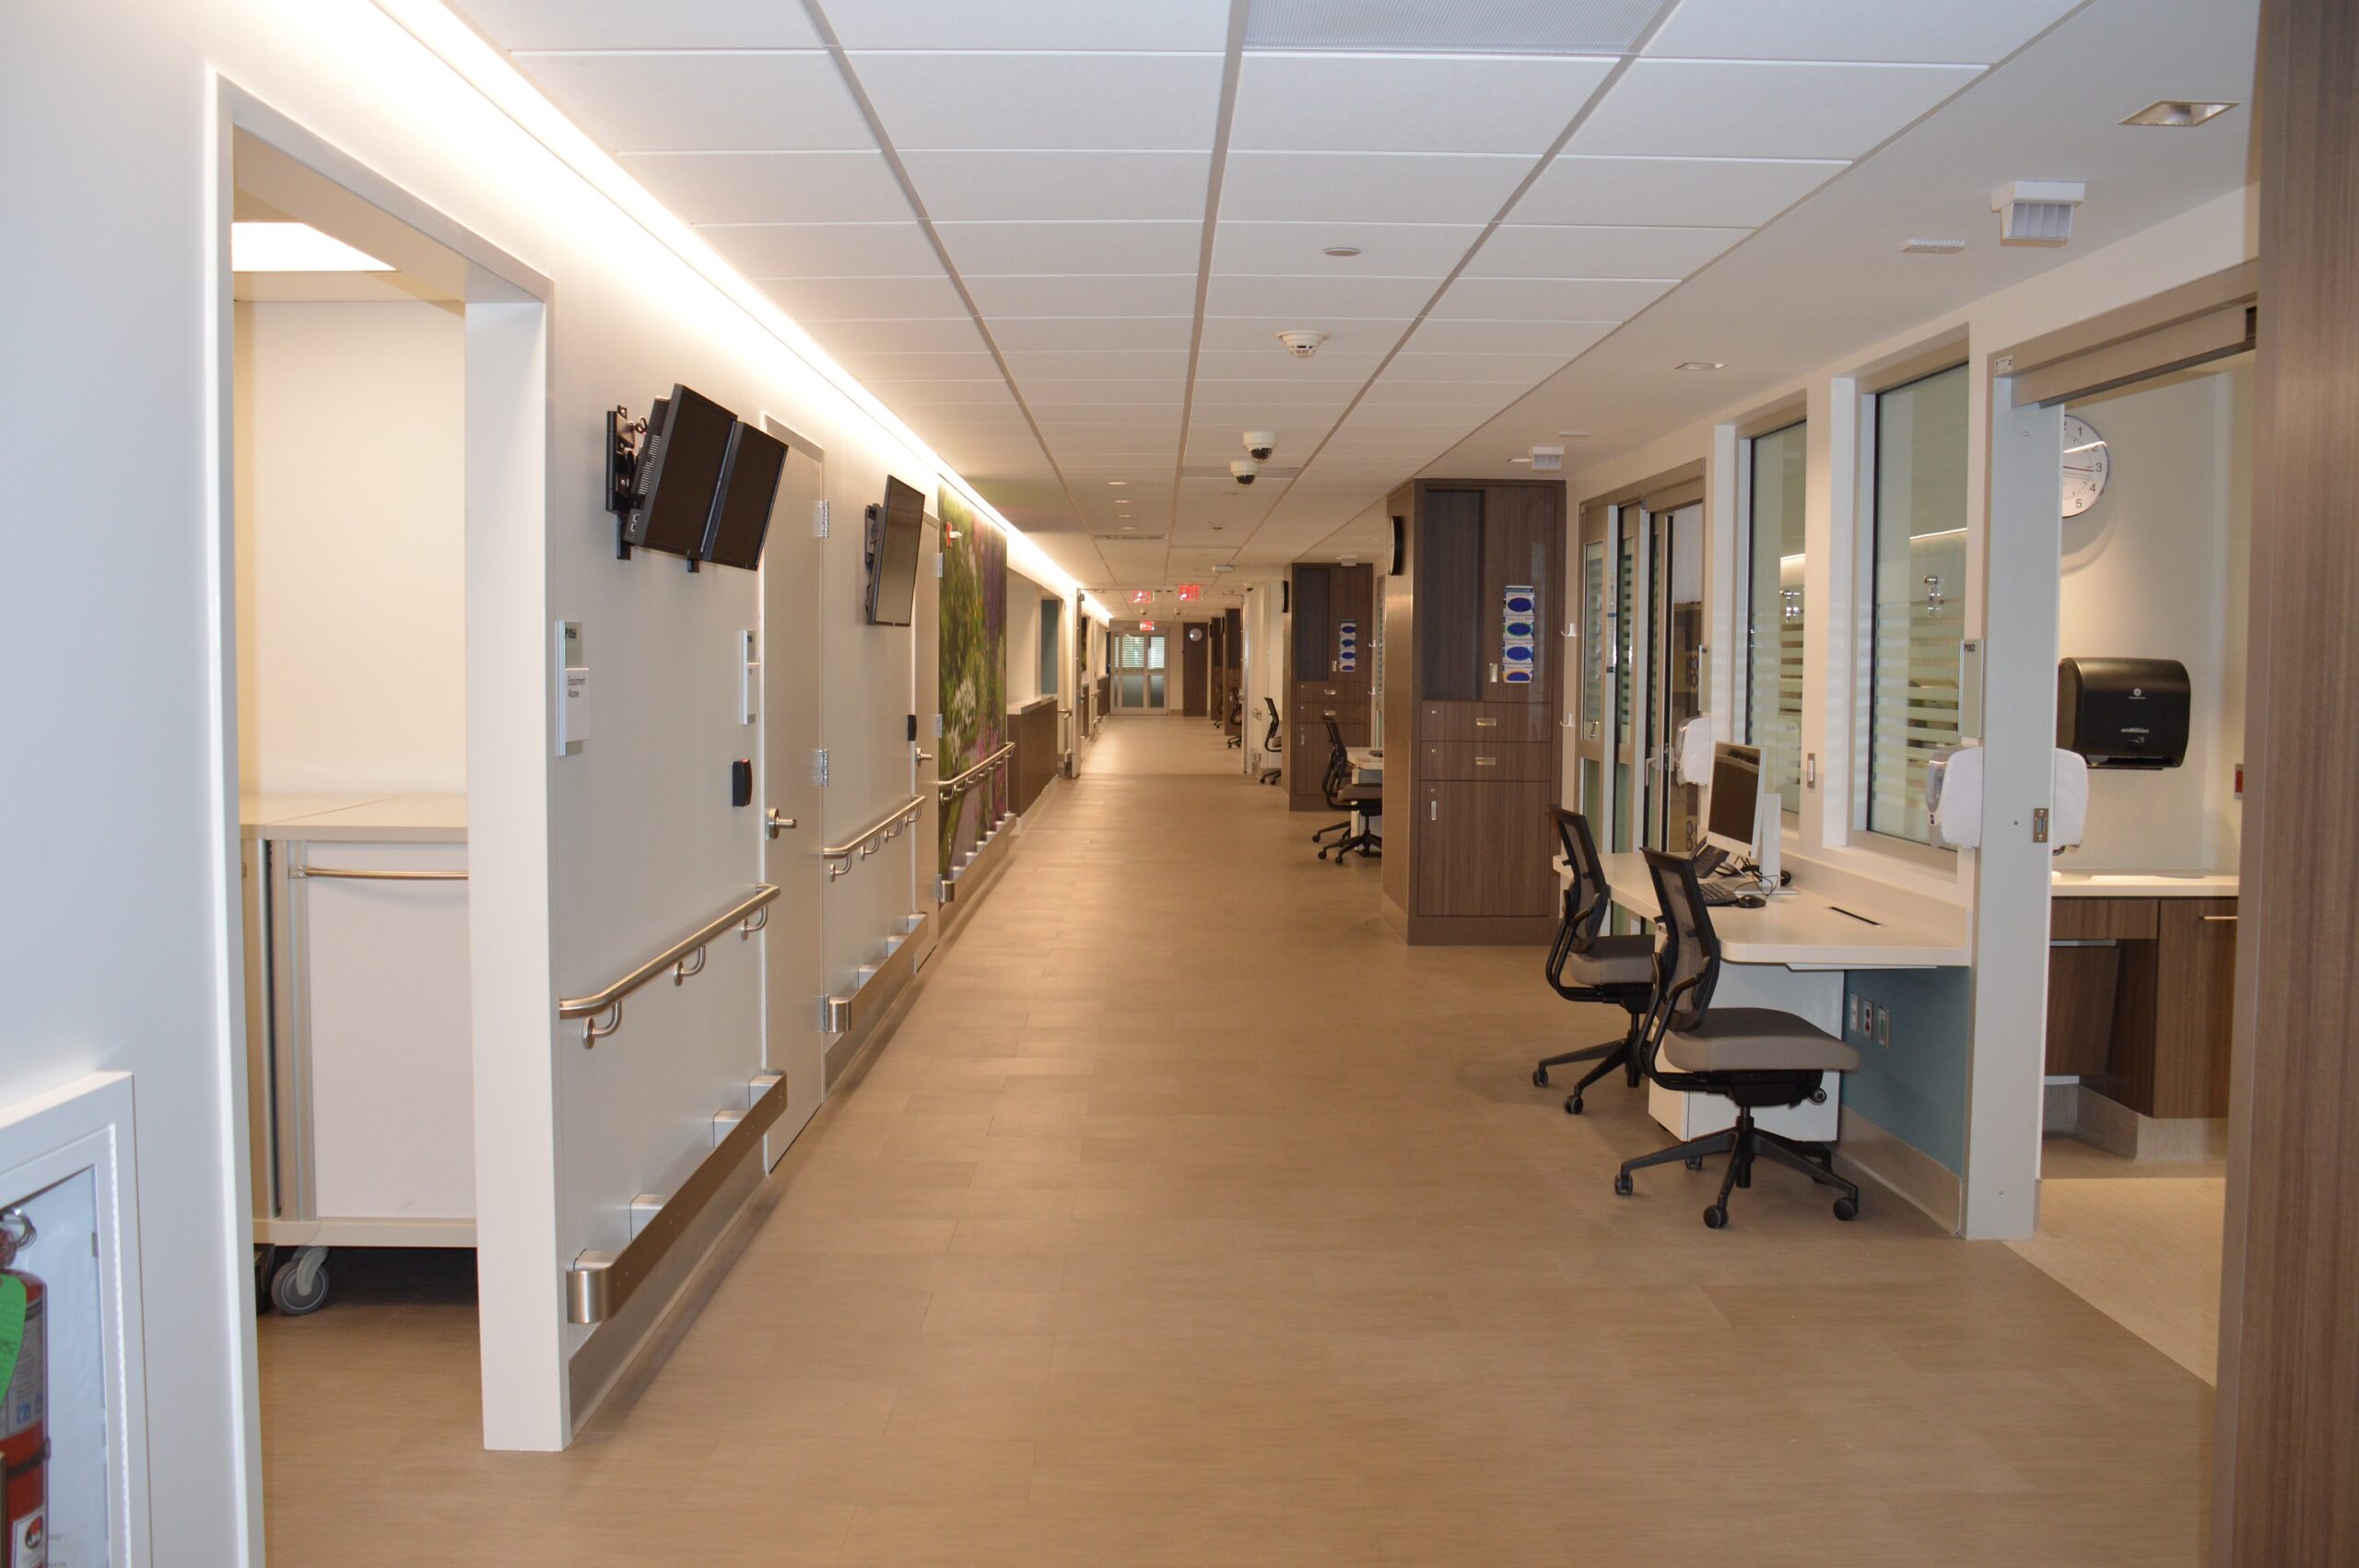 Hallway view of new P10 patient area